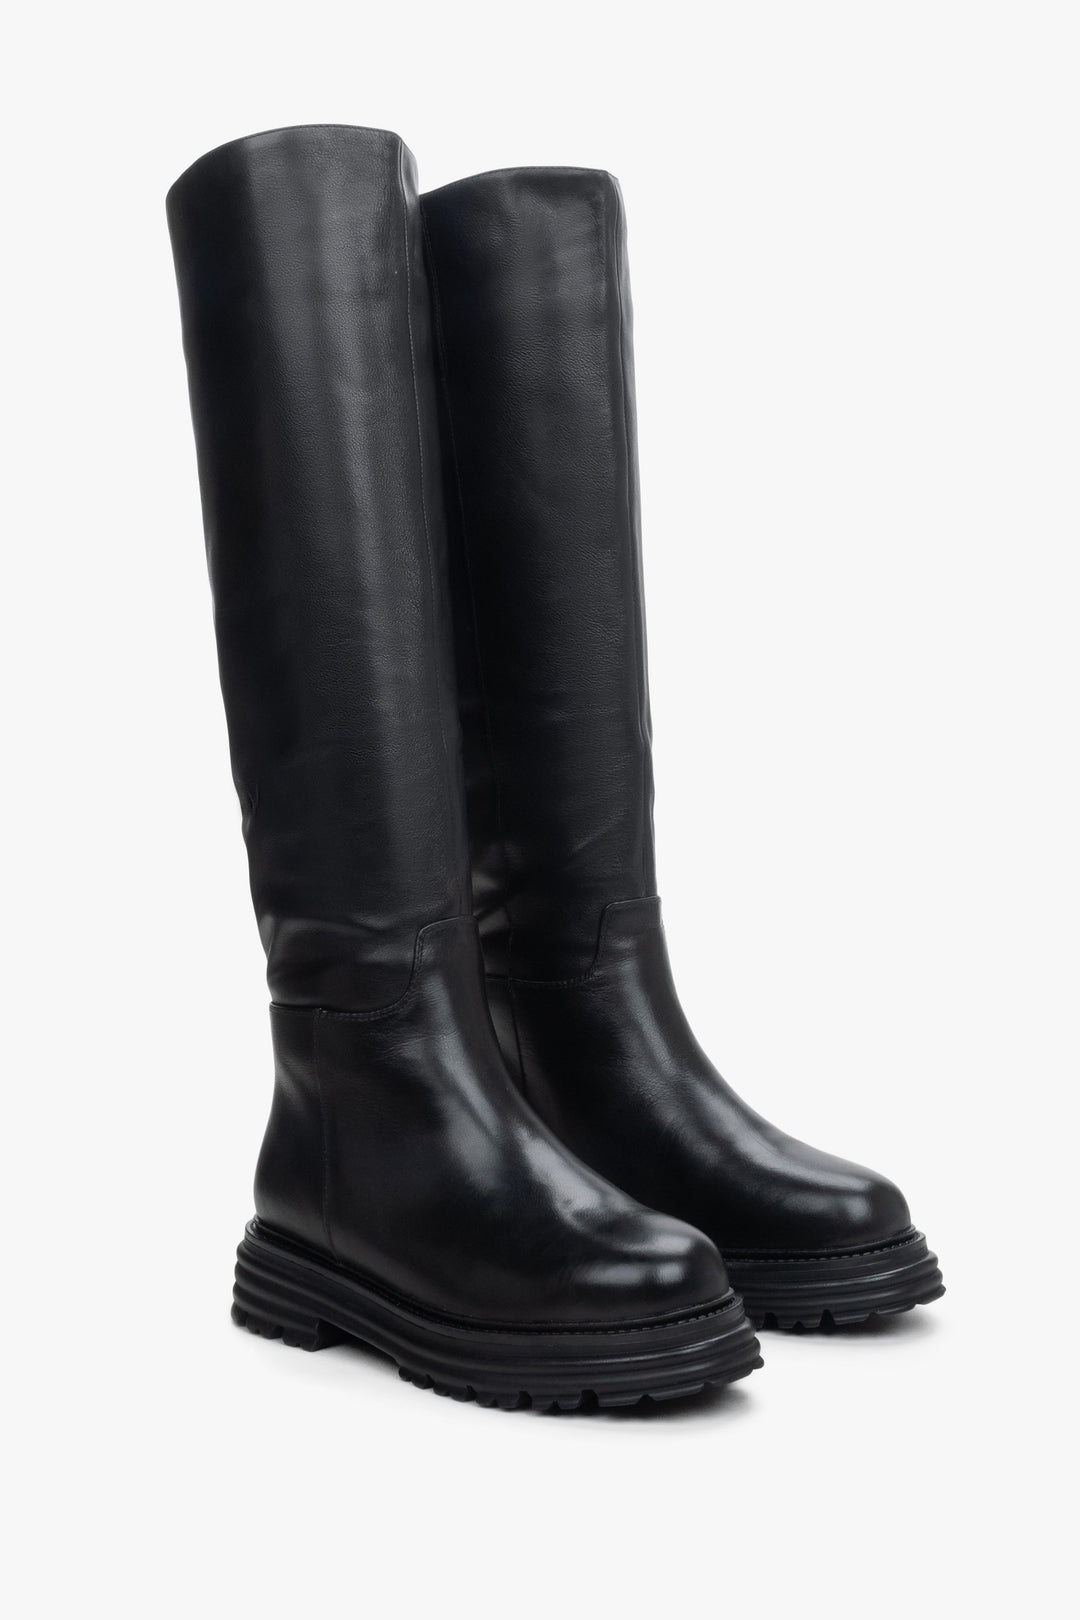 Women's knee-high boots in black.